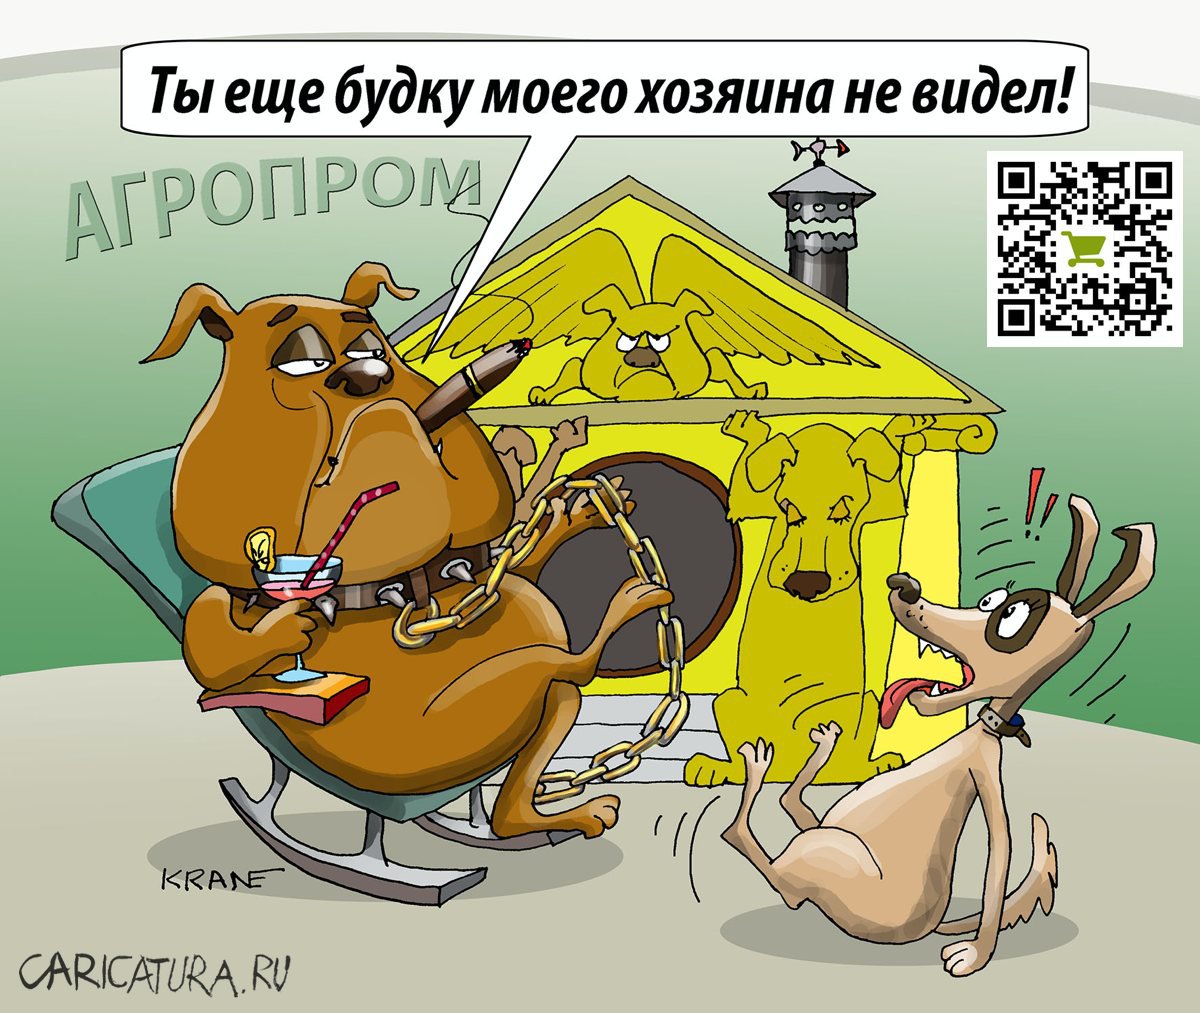 Карикатура "Под крылом кикиморы", Евгений Кран